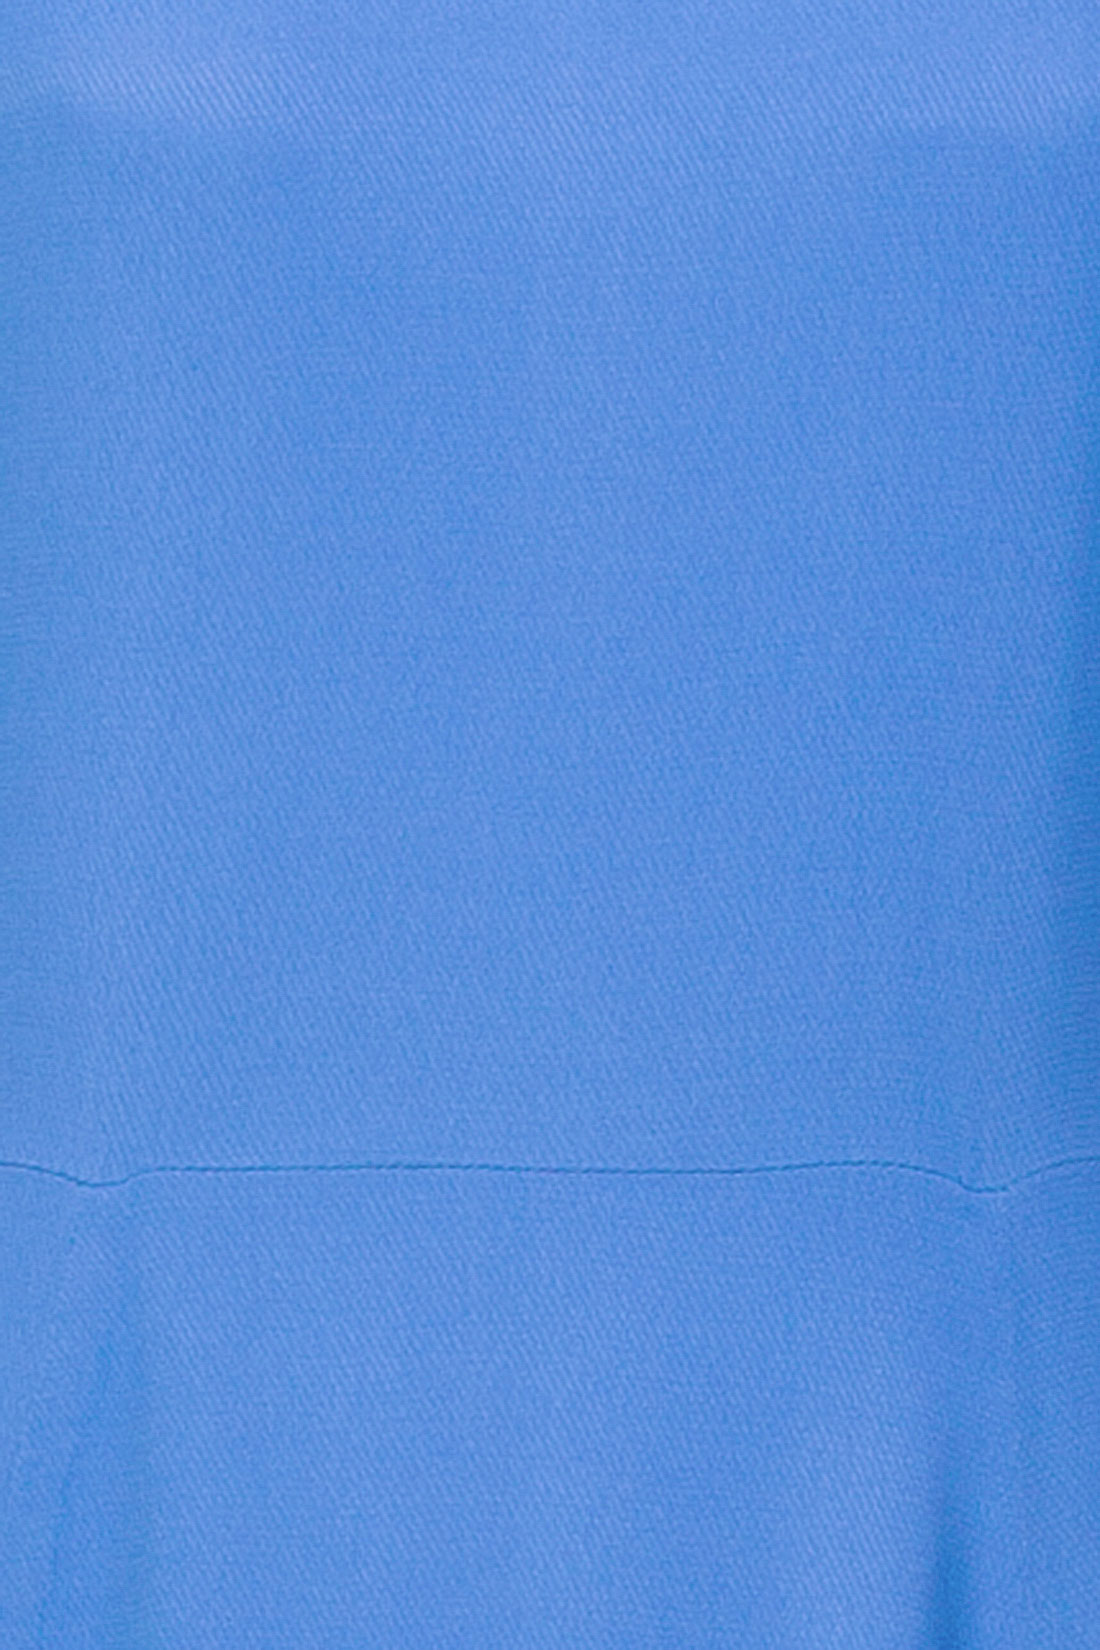 Платье с вырезом на спине (арт. baon B457025), размер S, цвет синий Платье с вырезом на спине (арт. baon B457025) - фото 3